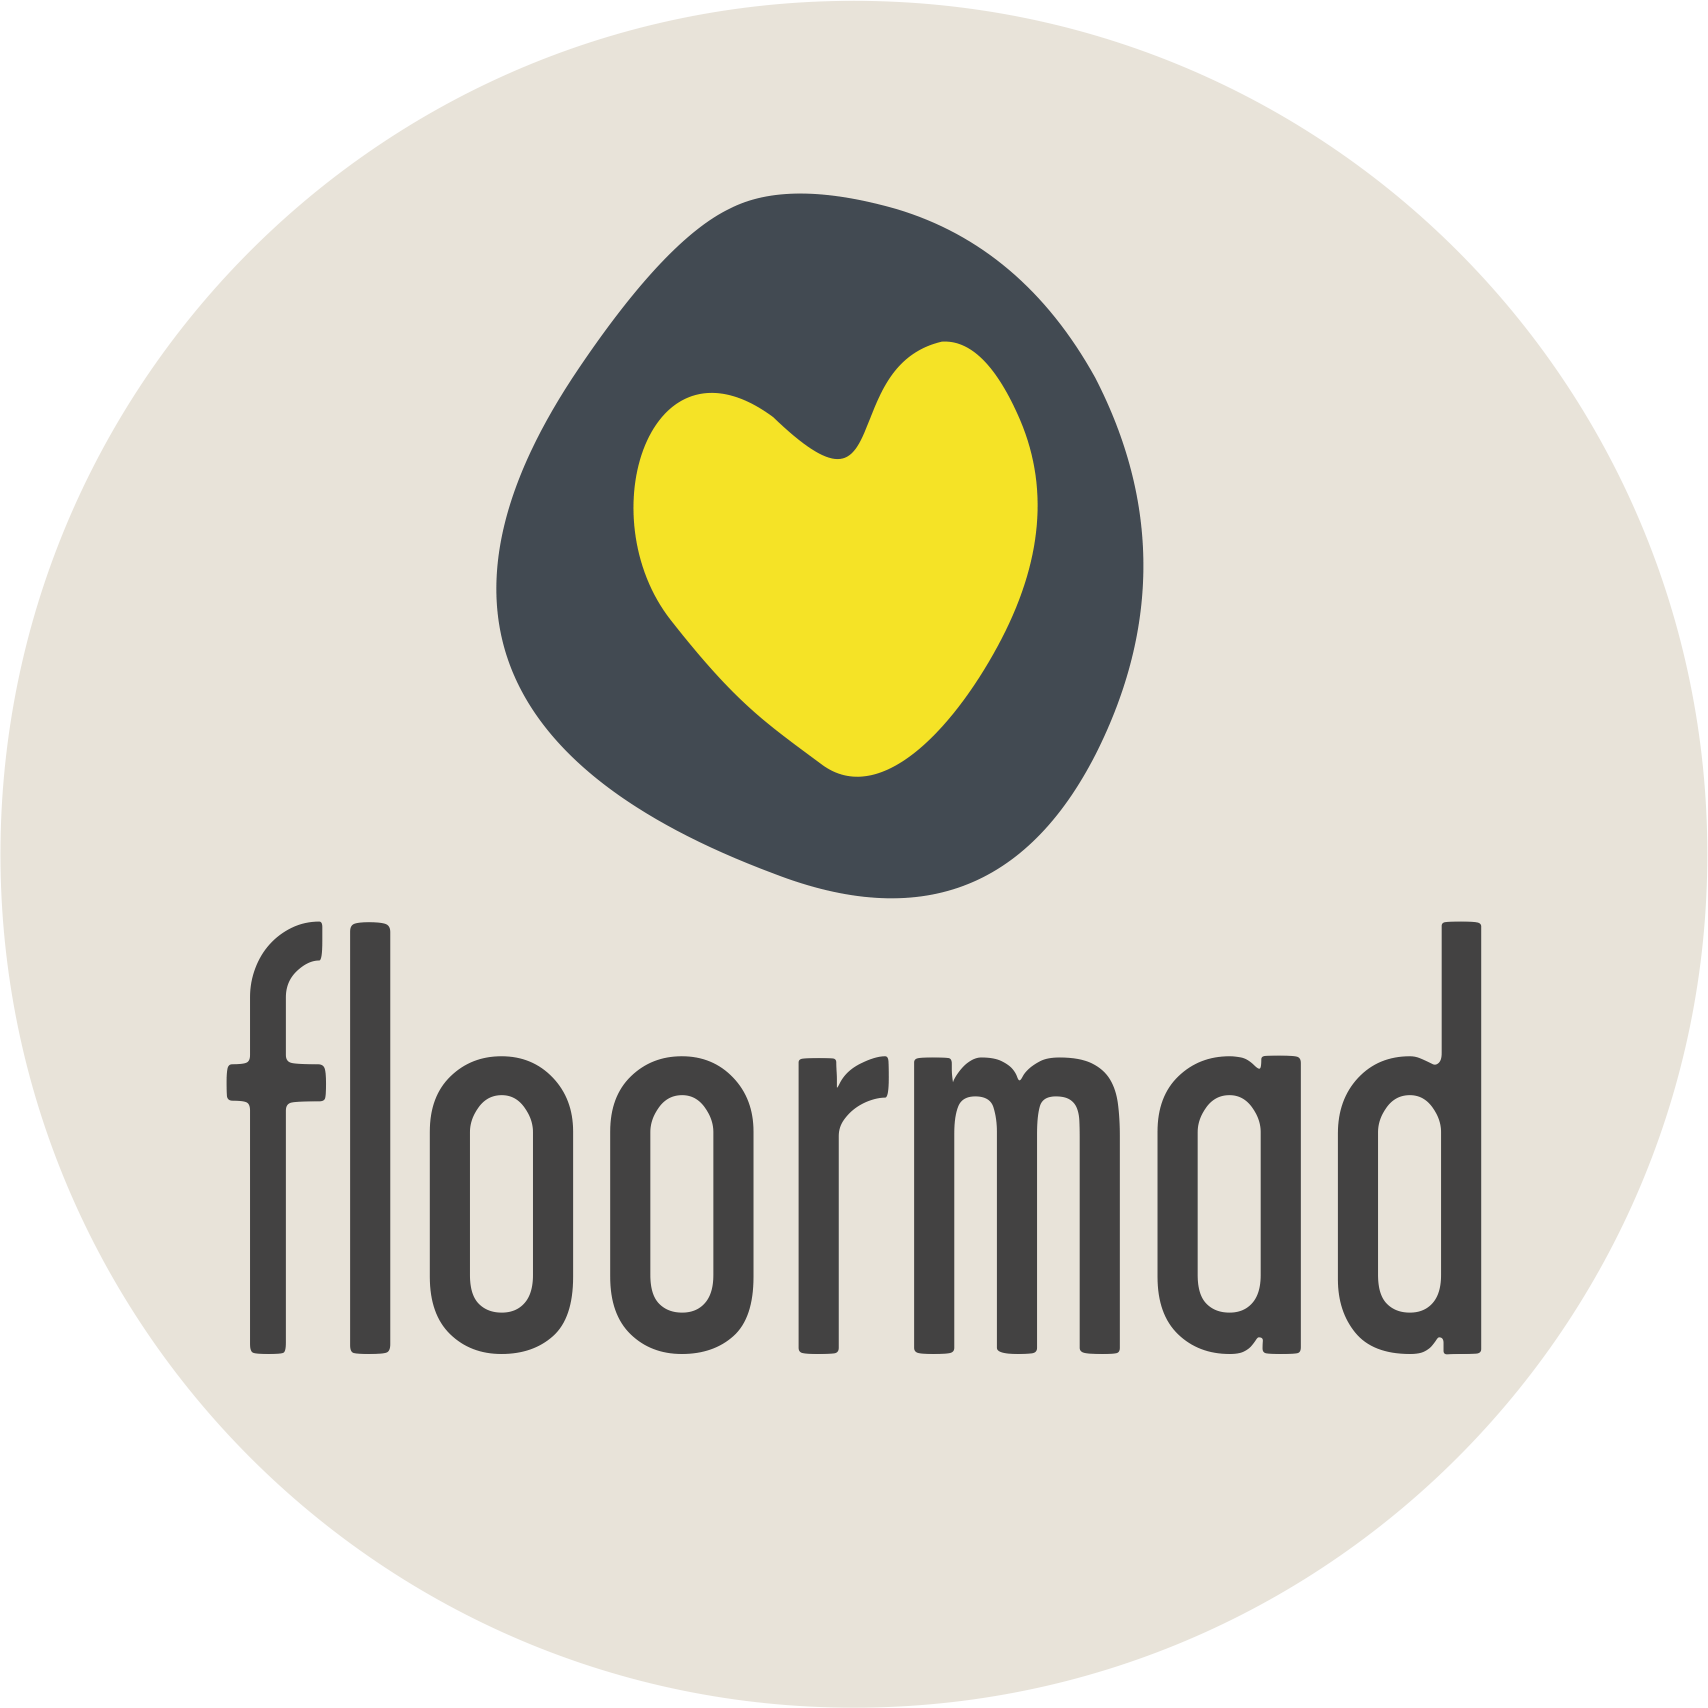 floormad LOGO ORIGINAL 2018 round